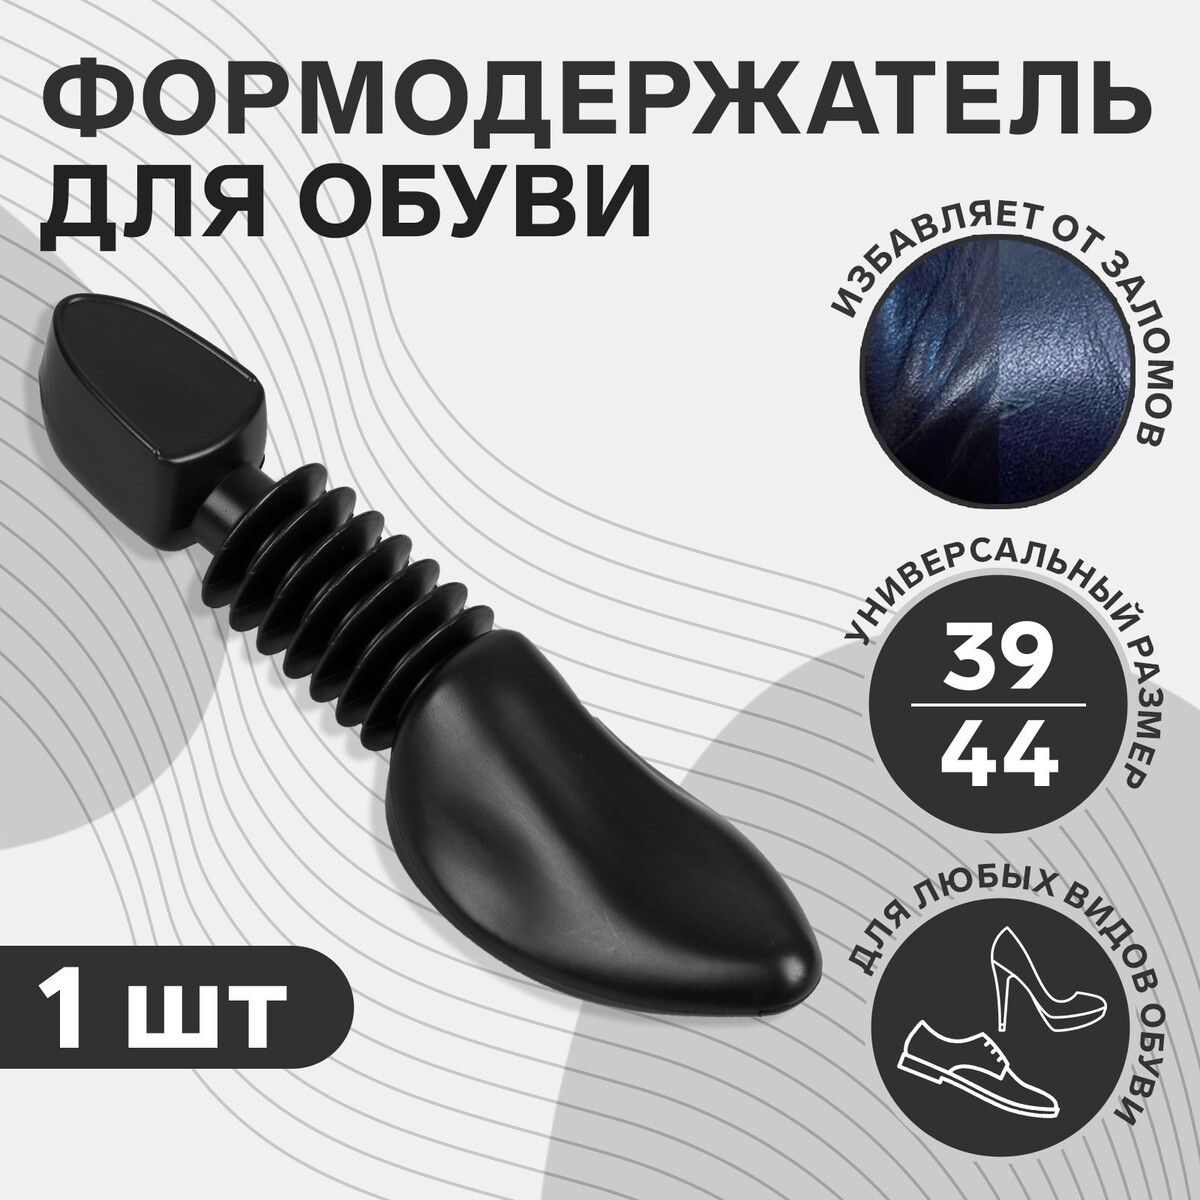 Колодка для сохранения формы обуви, 39-44р-р, цвет черный настольная игра ходилка 2 в 1 три кота и море приключений учим формы и а